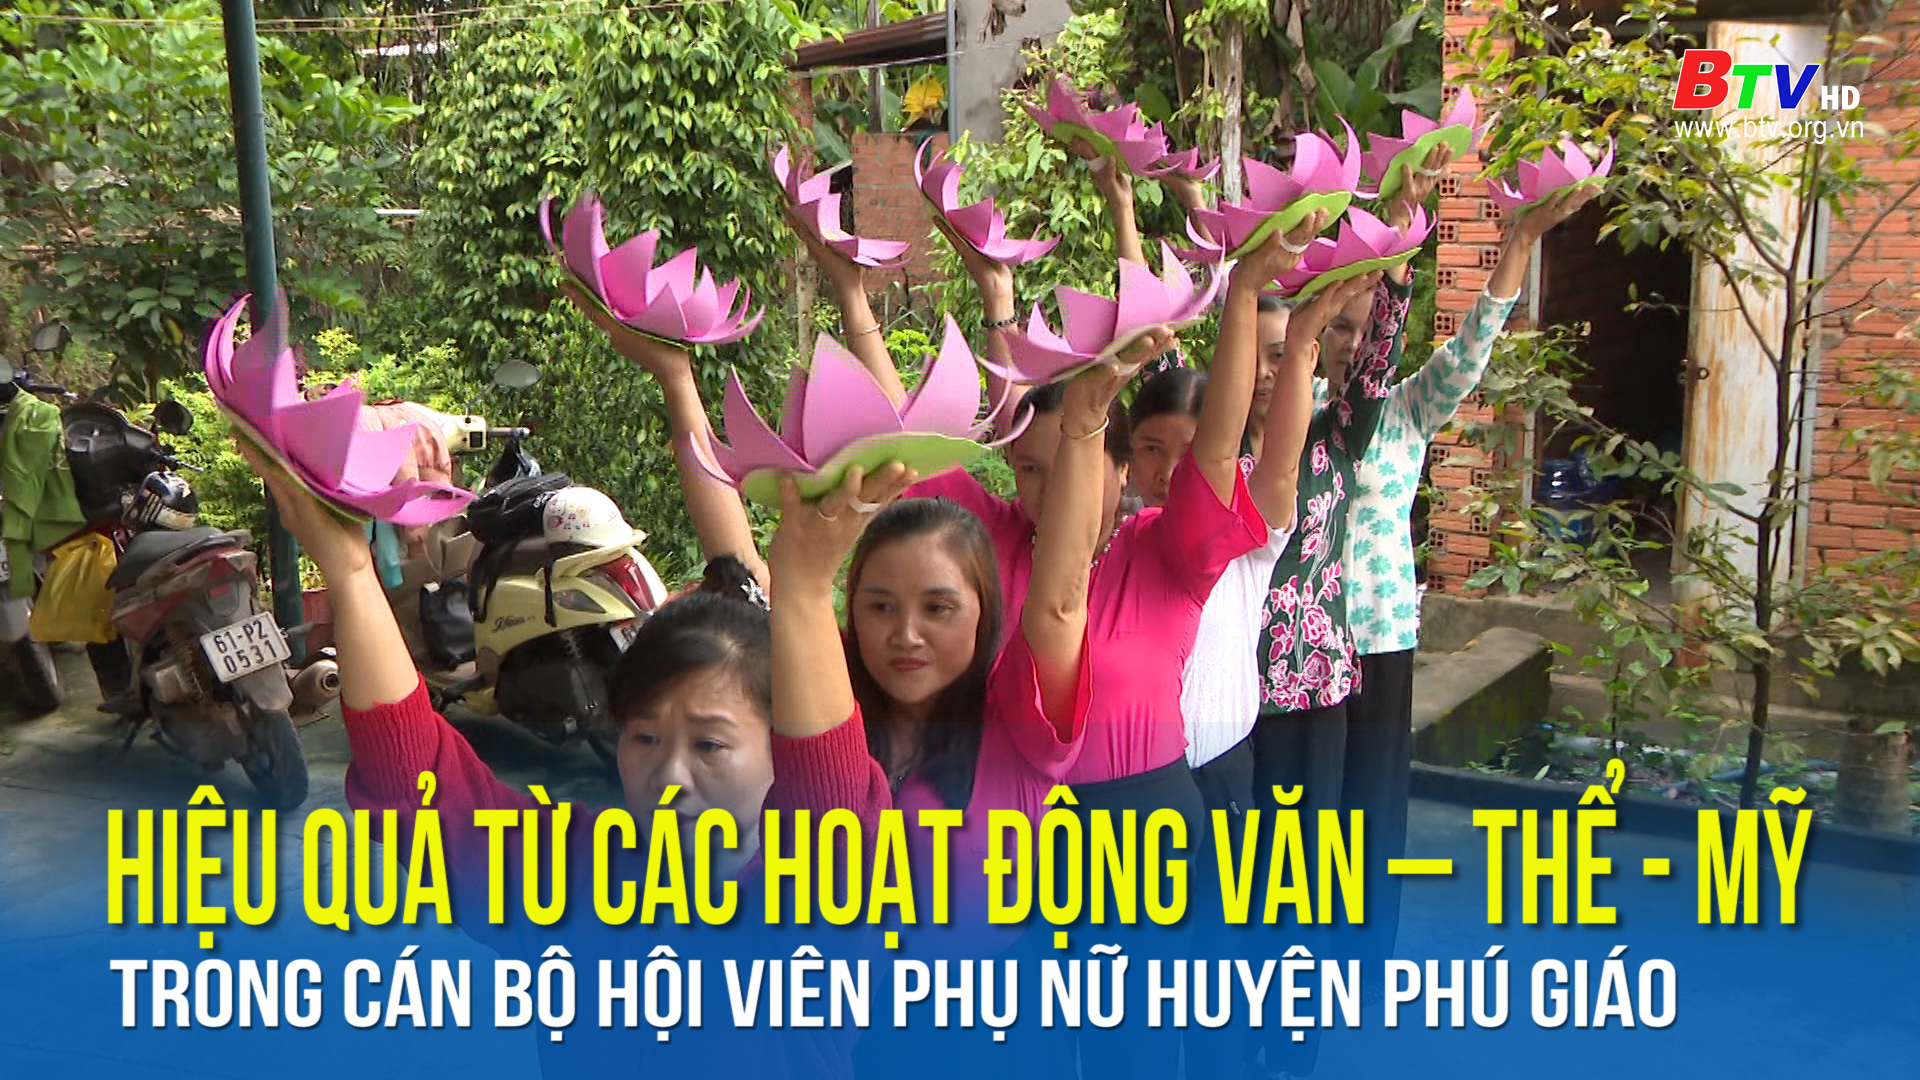 Hiệu quả từ các hoạt động văn – thể - mỹ trong cán bộ hội viên phụ nữ huyện Phú Giáo